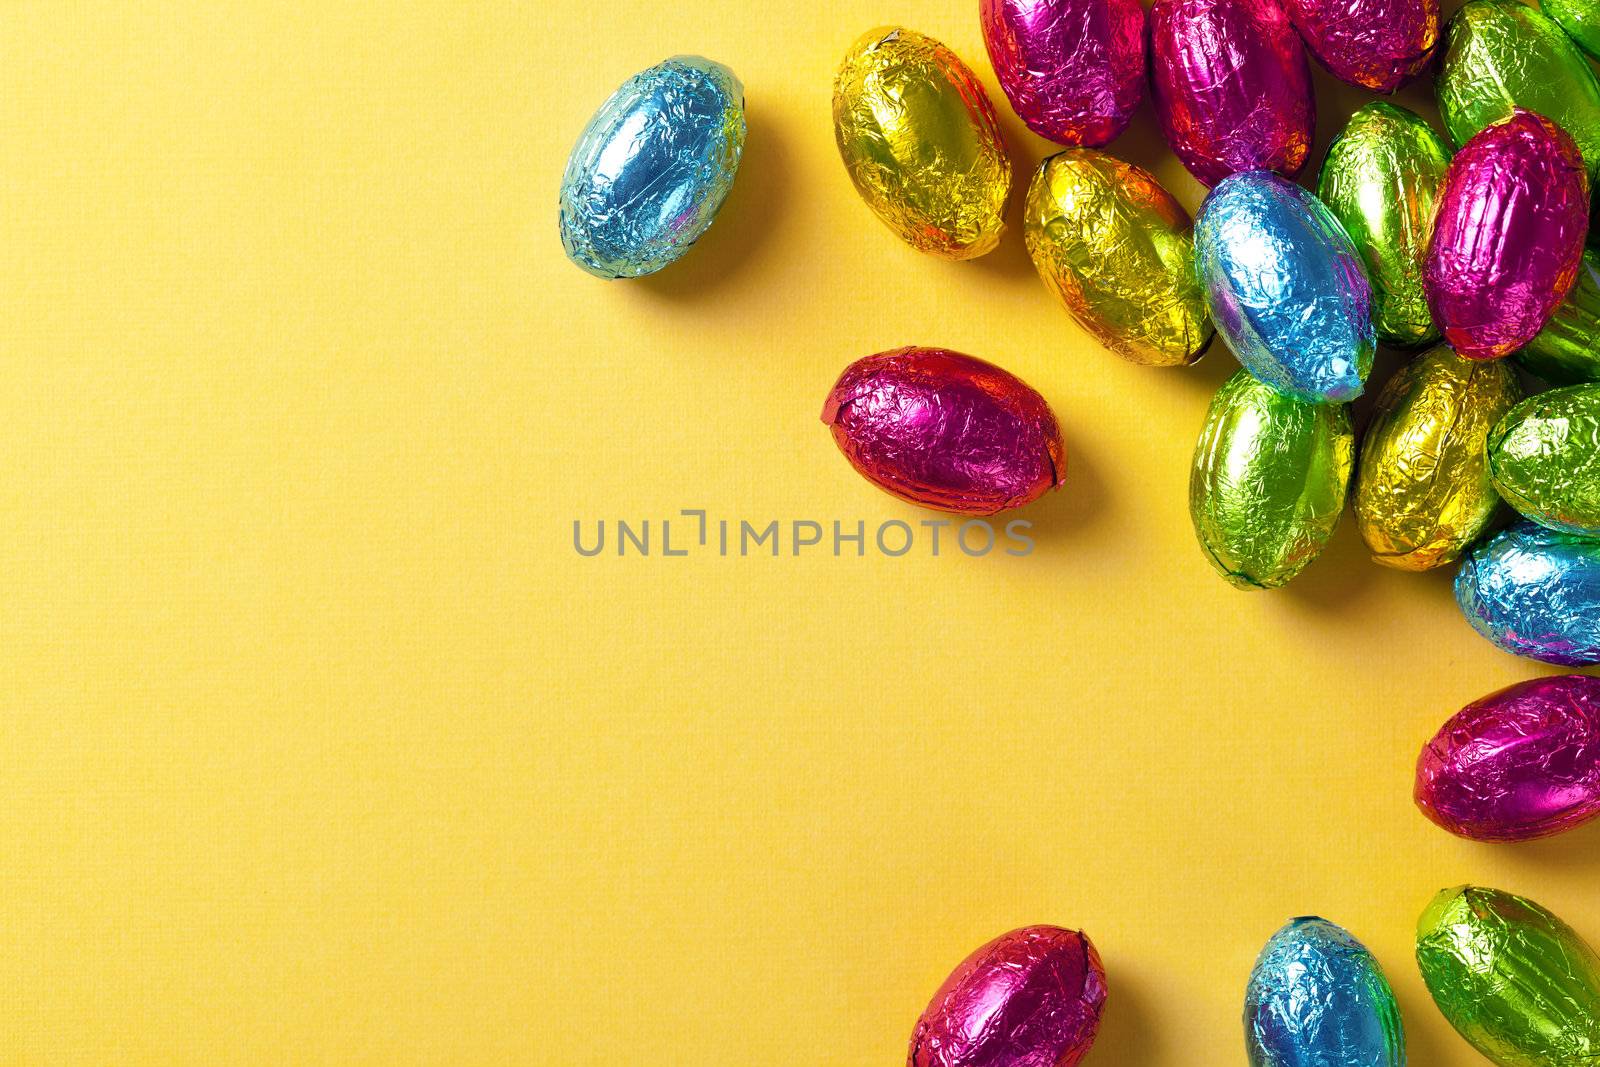 Easter Eggs by bozena_fulawka